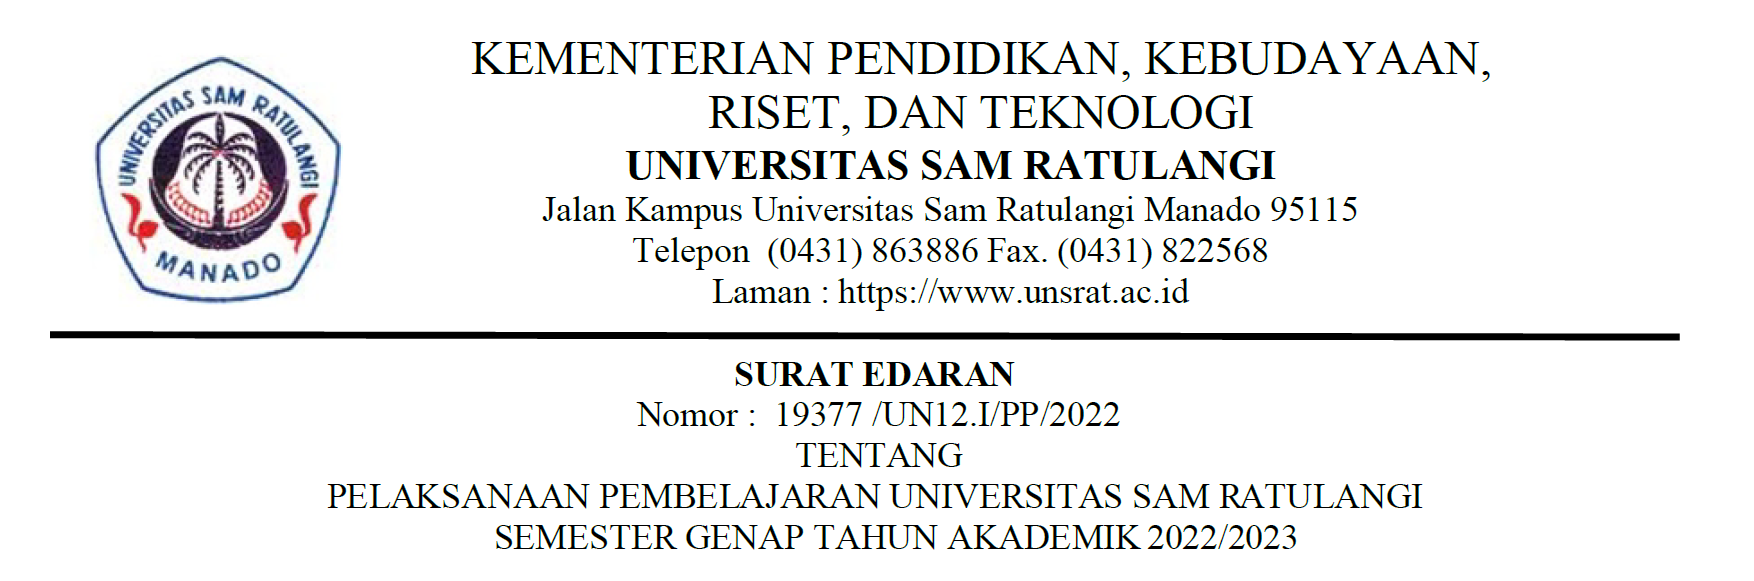 Surat Edaran Tentang Pelaksanaan Pembelajaran Universitas Sam Ratulangi Semester Genap Tahun Akademik 2022/2023